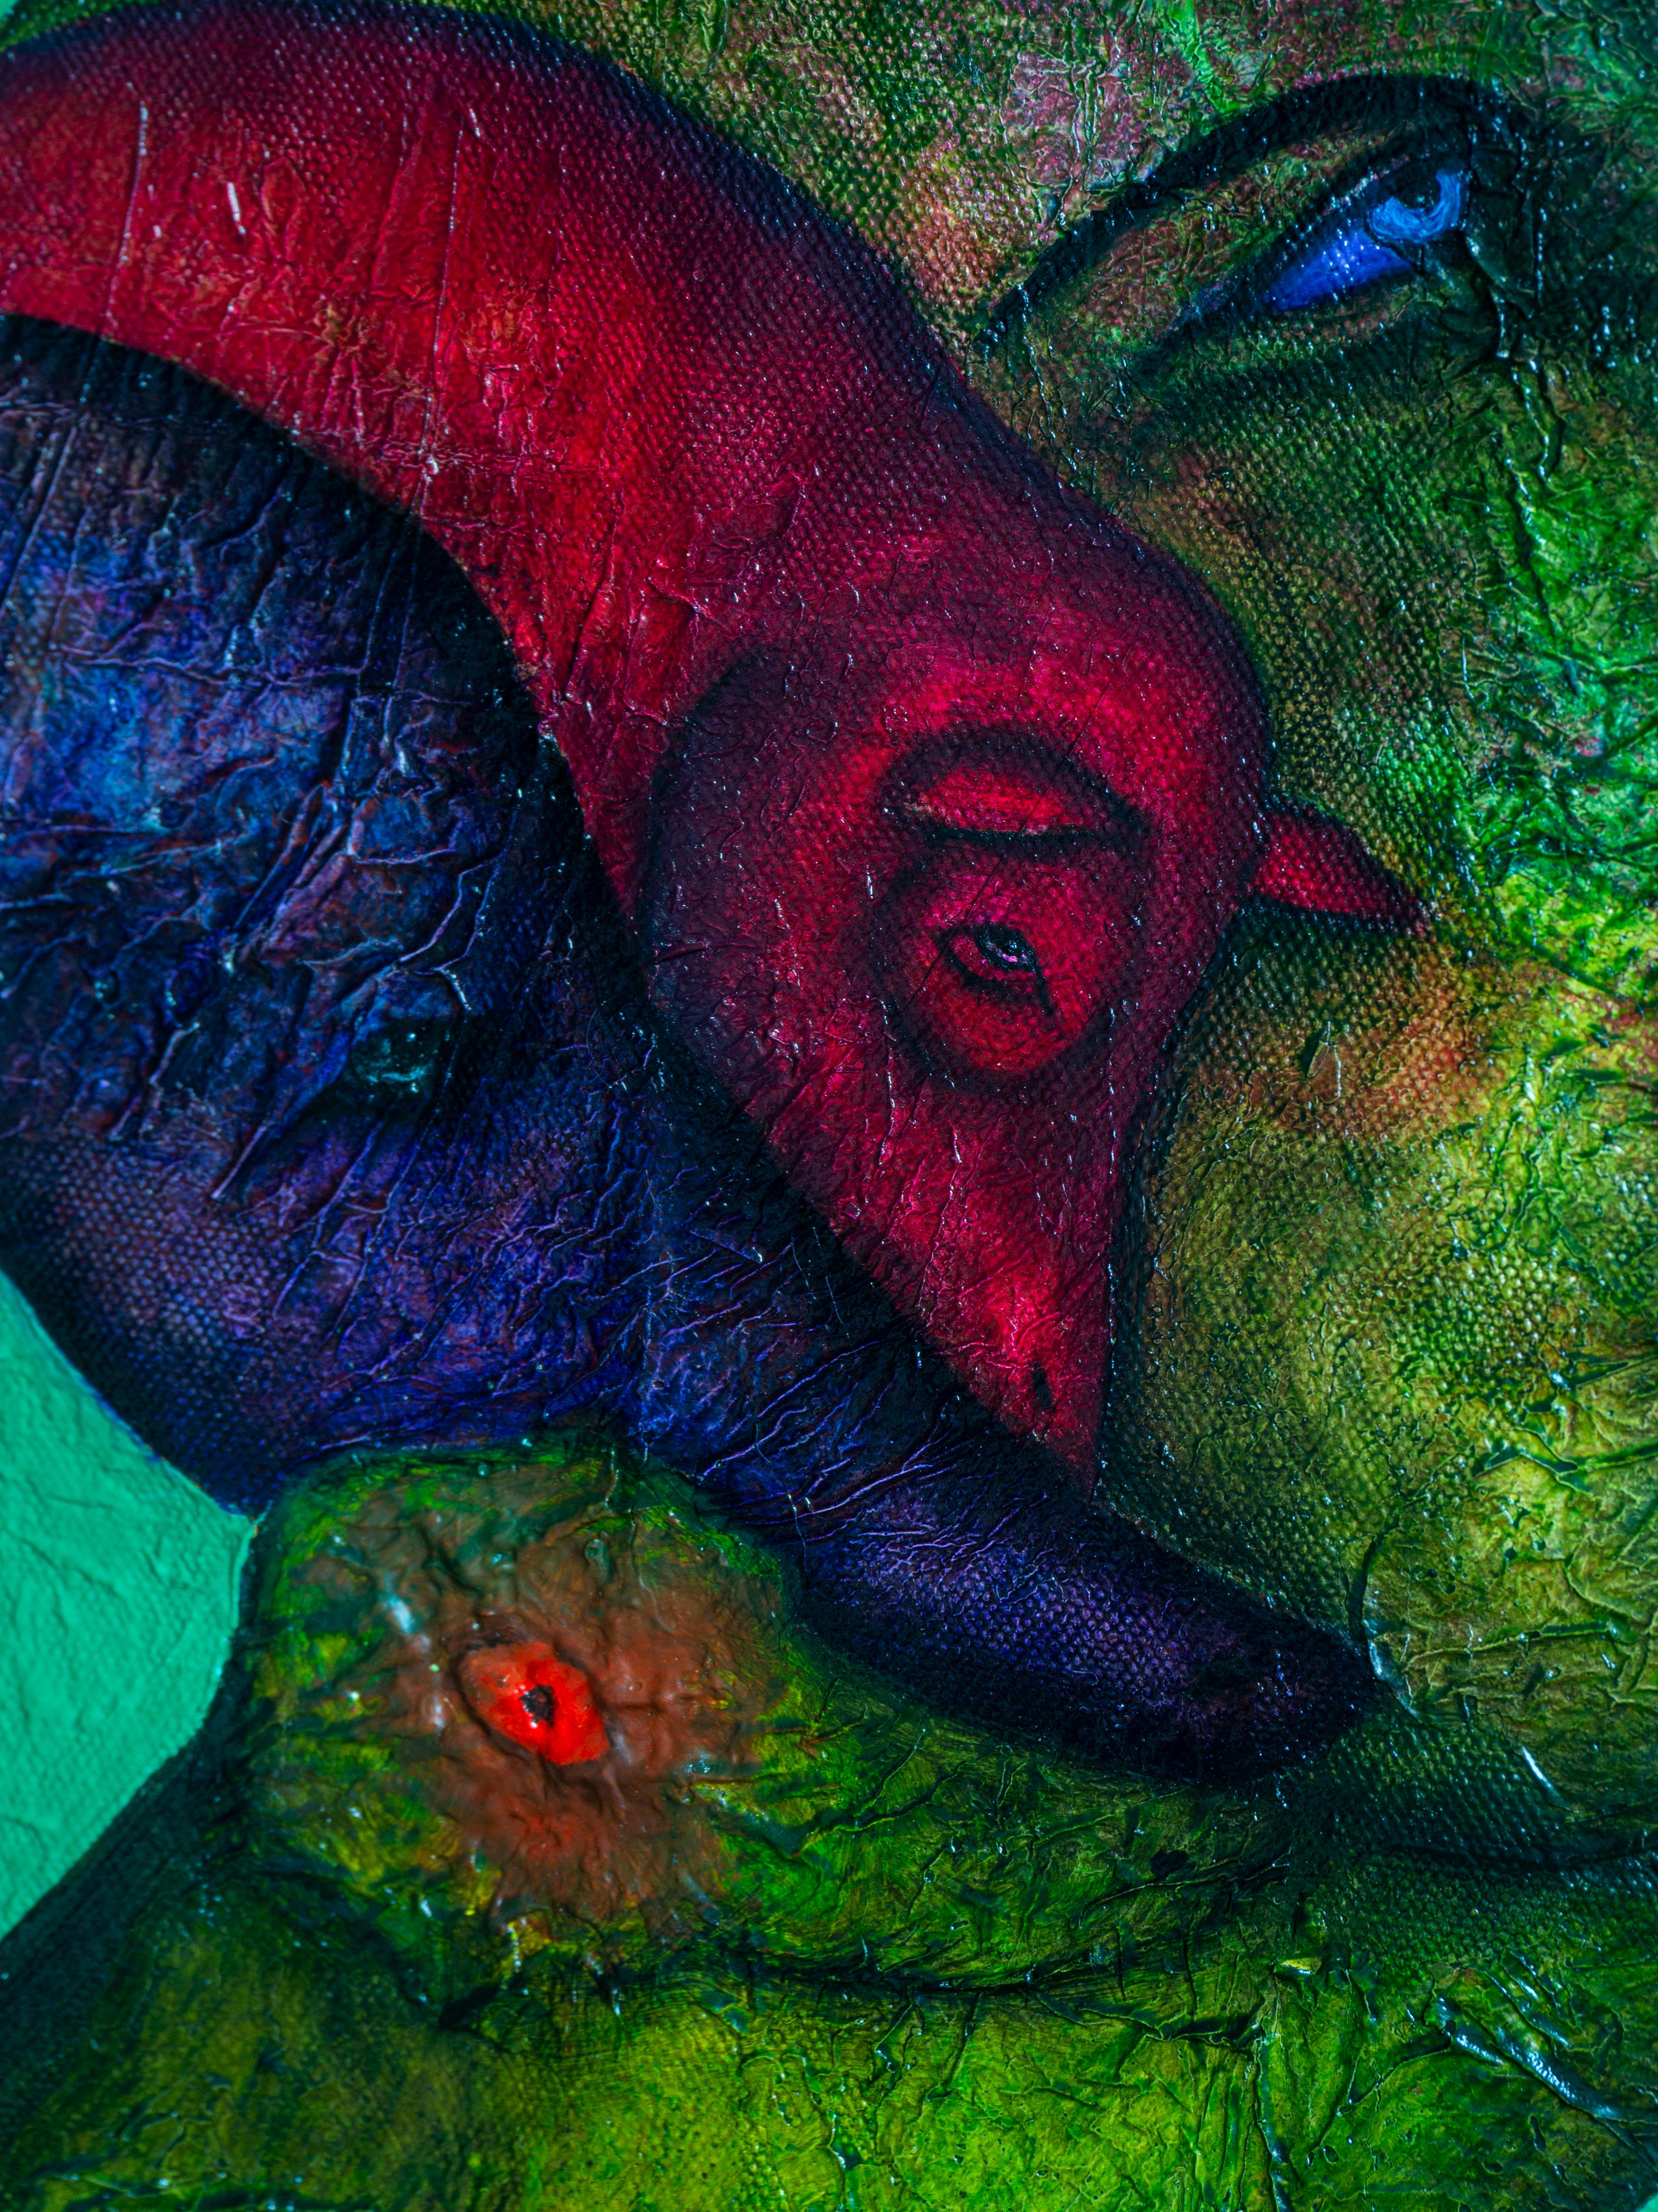 Ölgemälde auf Leinwand, misst etwa 14,5 mal 14,5 Zentimeter. Es zeigt eine menschliche Silhouette mit grünen Texturen und zwei fantastische Tiere vor einem Hintergrund aus Grün- und Gelbtönen. Ein einzigartiges Werk, das figurative und abstrakte